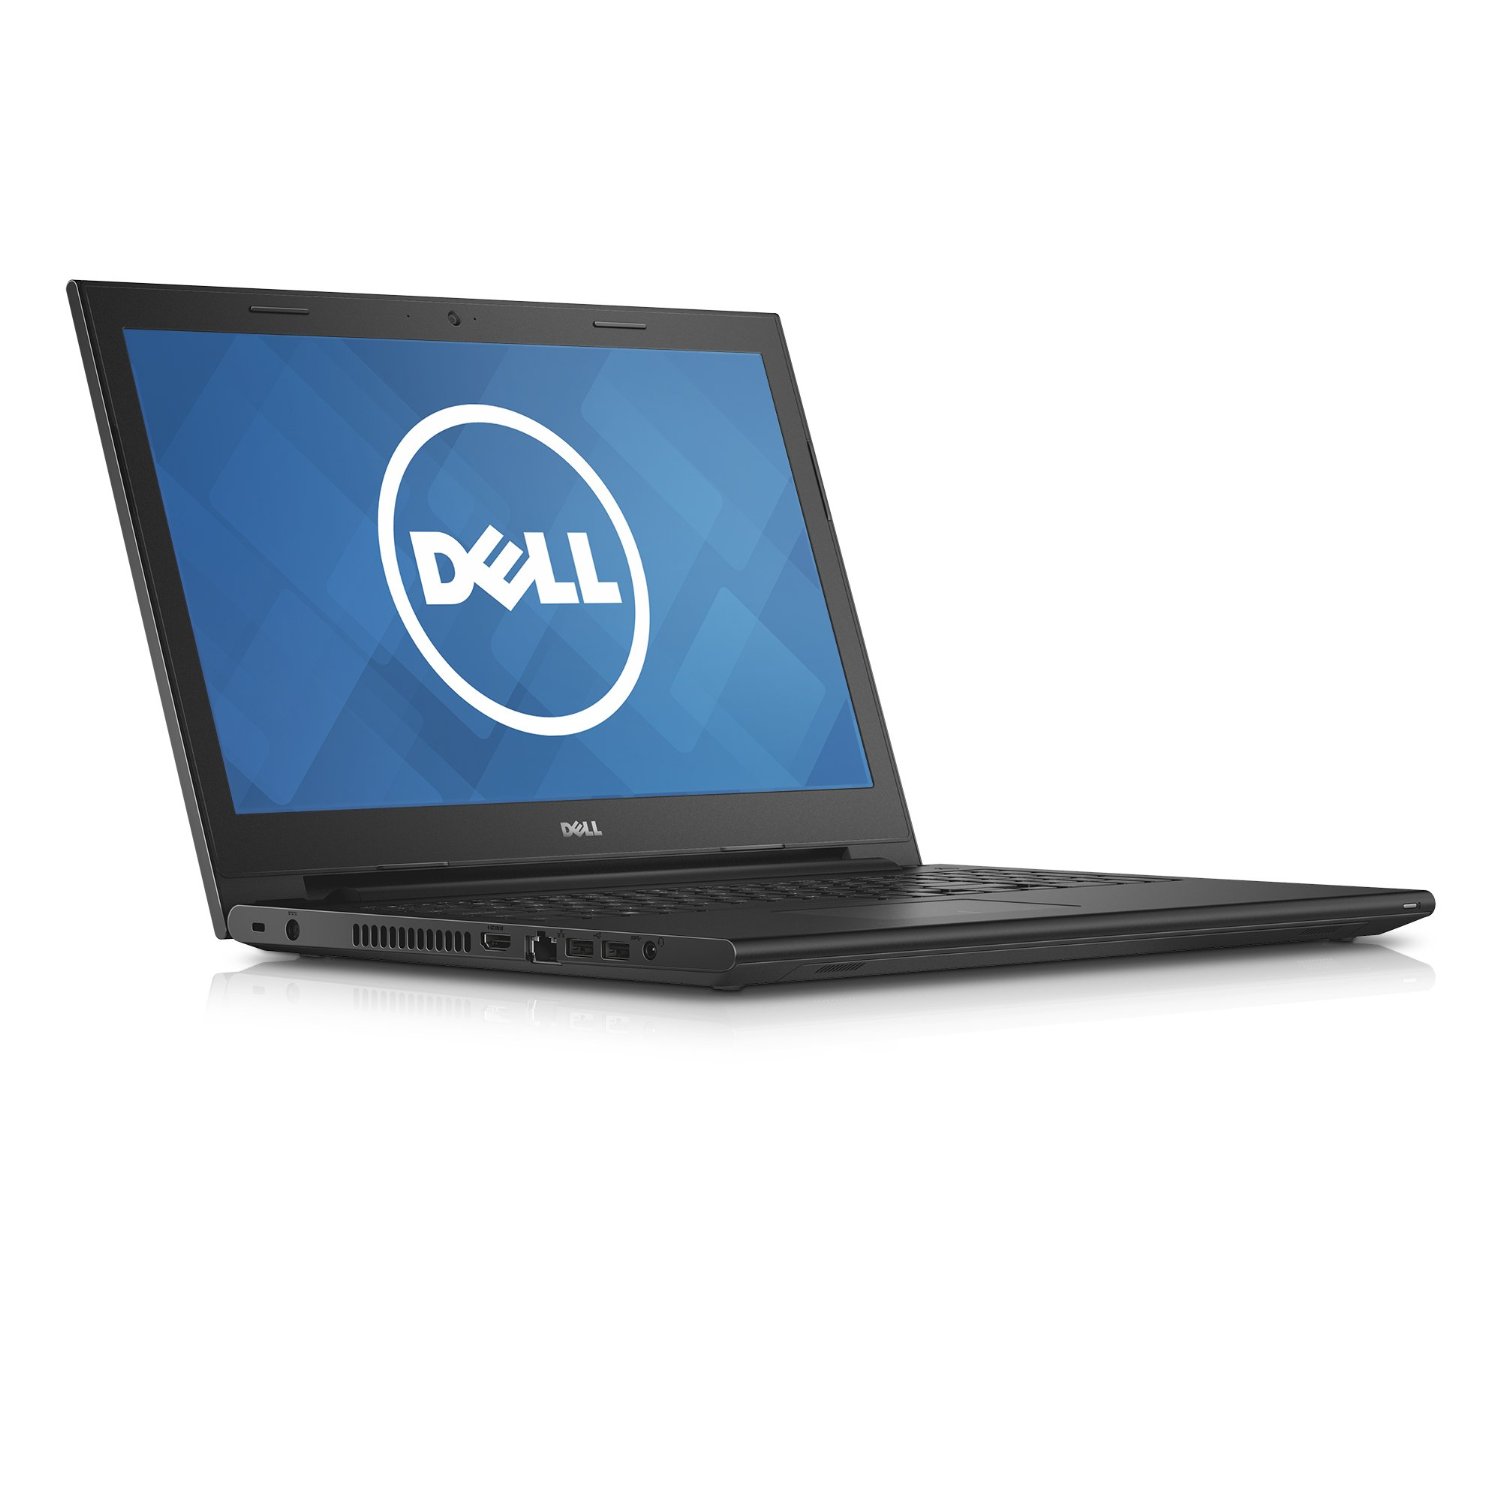 Laptop Dell Inspiron 3543_696TP5 Core i7-5500/4GB/500GB 15.6”